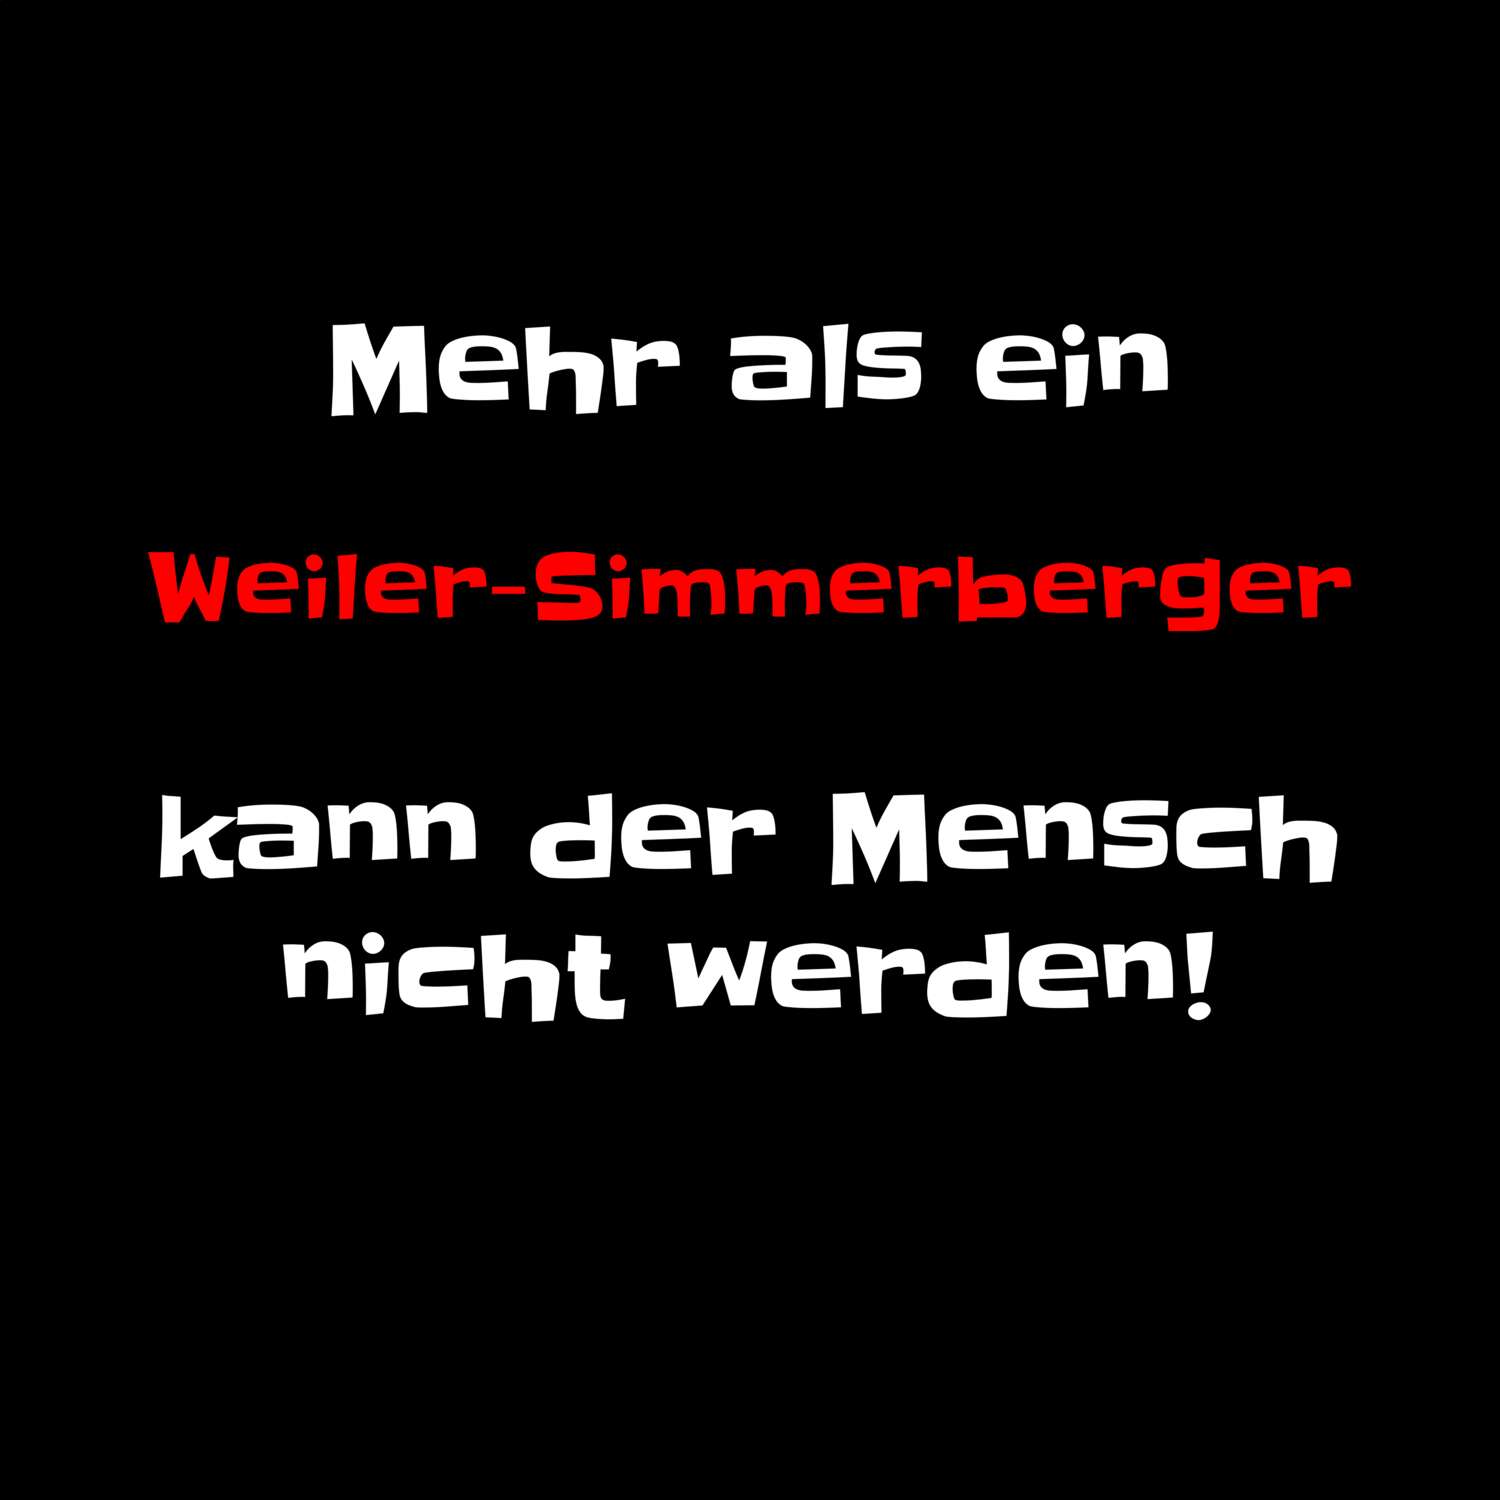 Weiler-Simmerberg T-Shirt »Mehr als ein«